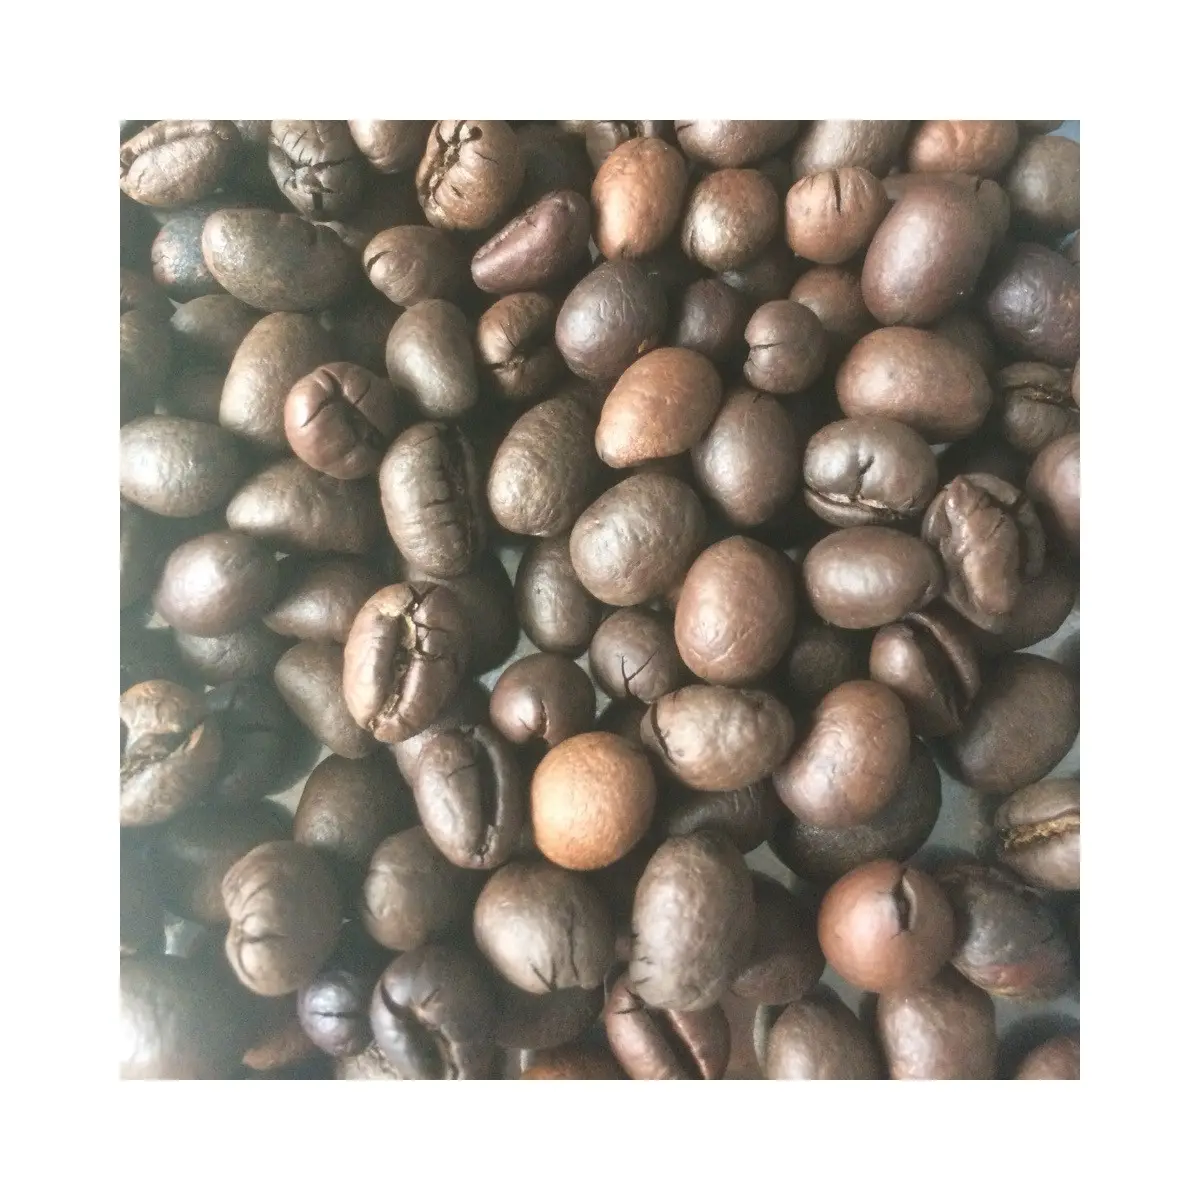 उचित मूल्य भुना हुआ रोबस्टा अरेबिका कॉफी बीन्स उच्च गुणवत्ता वाले गहरे शुद्ध स्वाद के साथ कार्बनिक ताजा